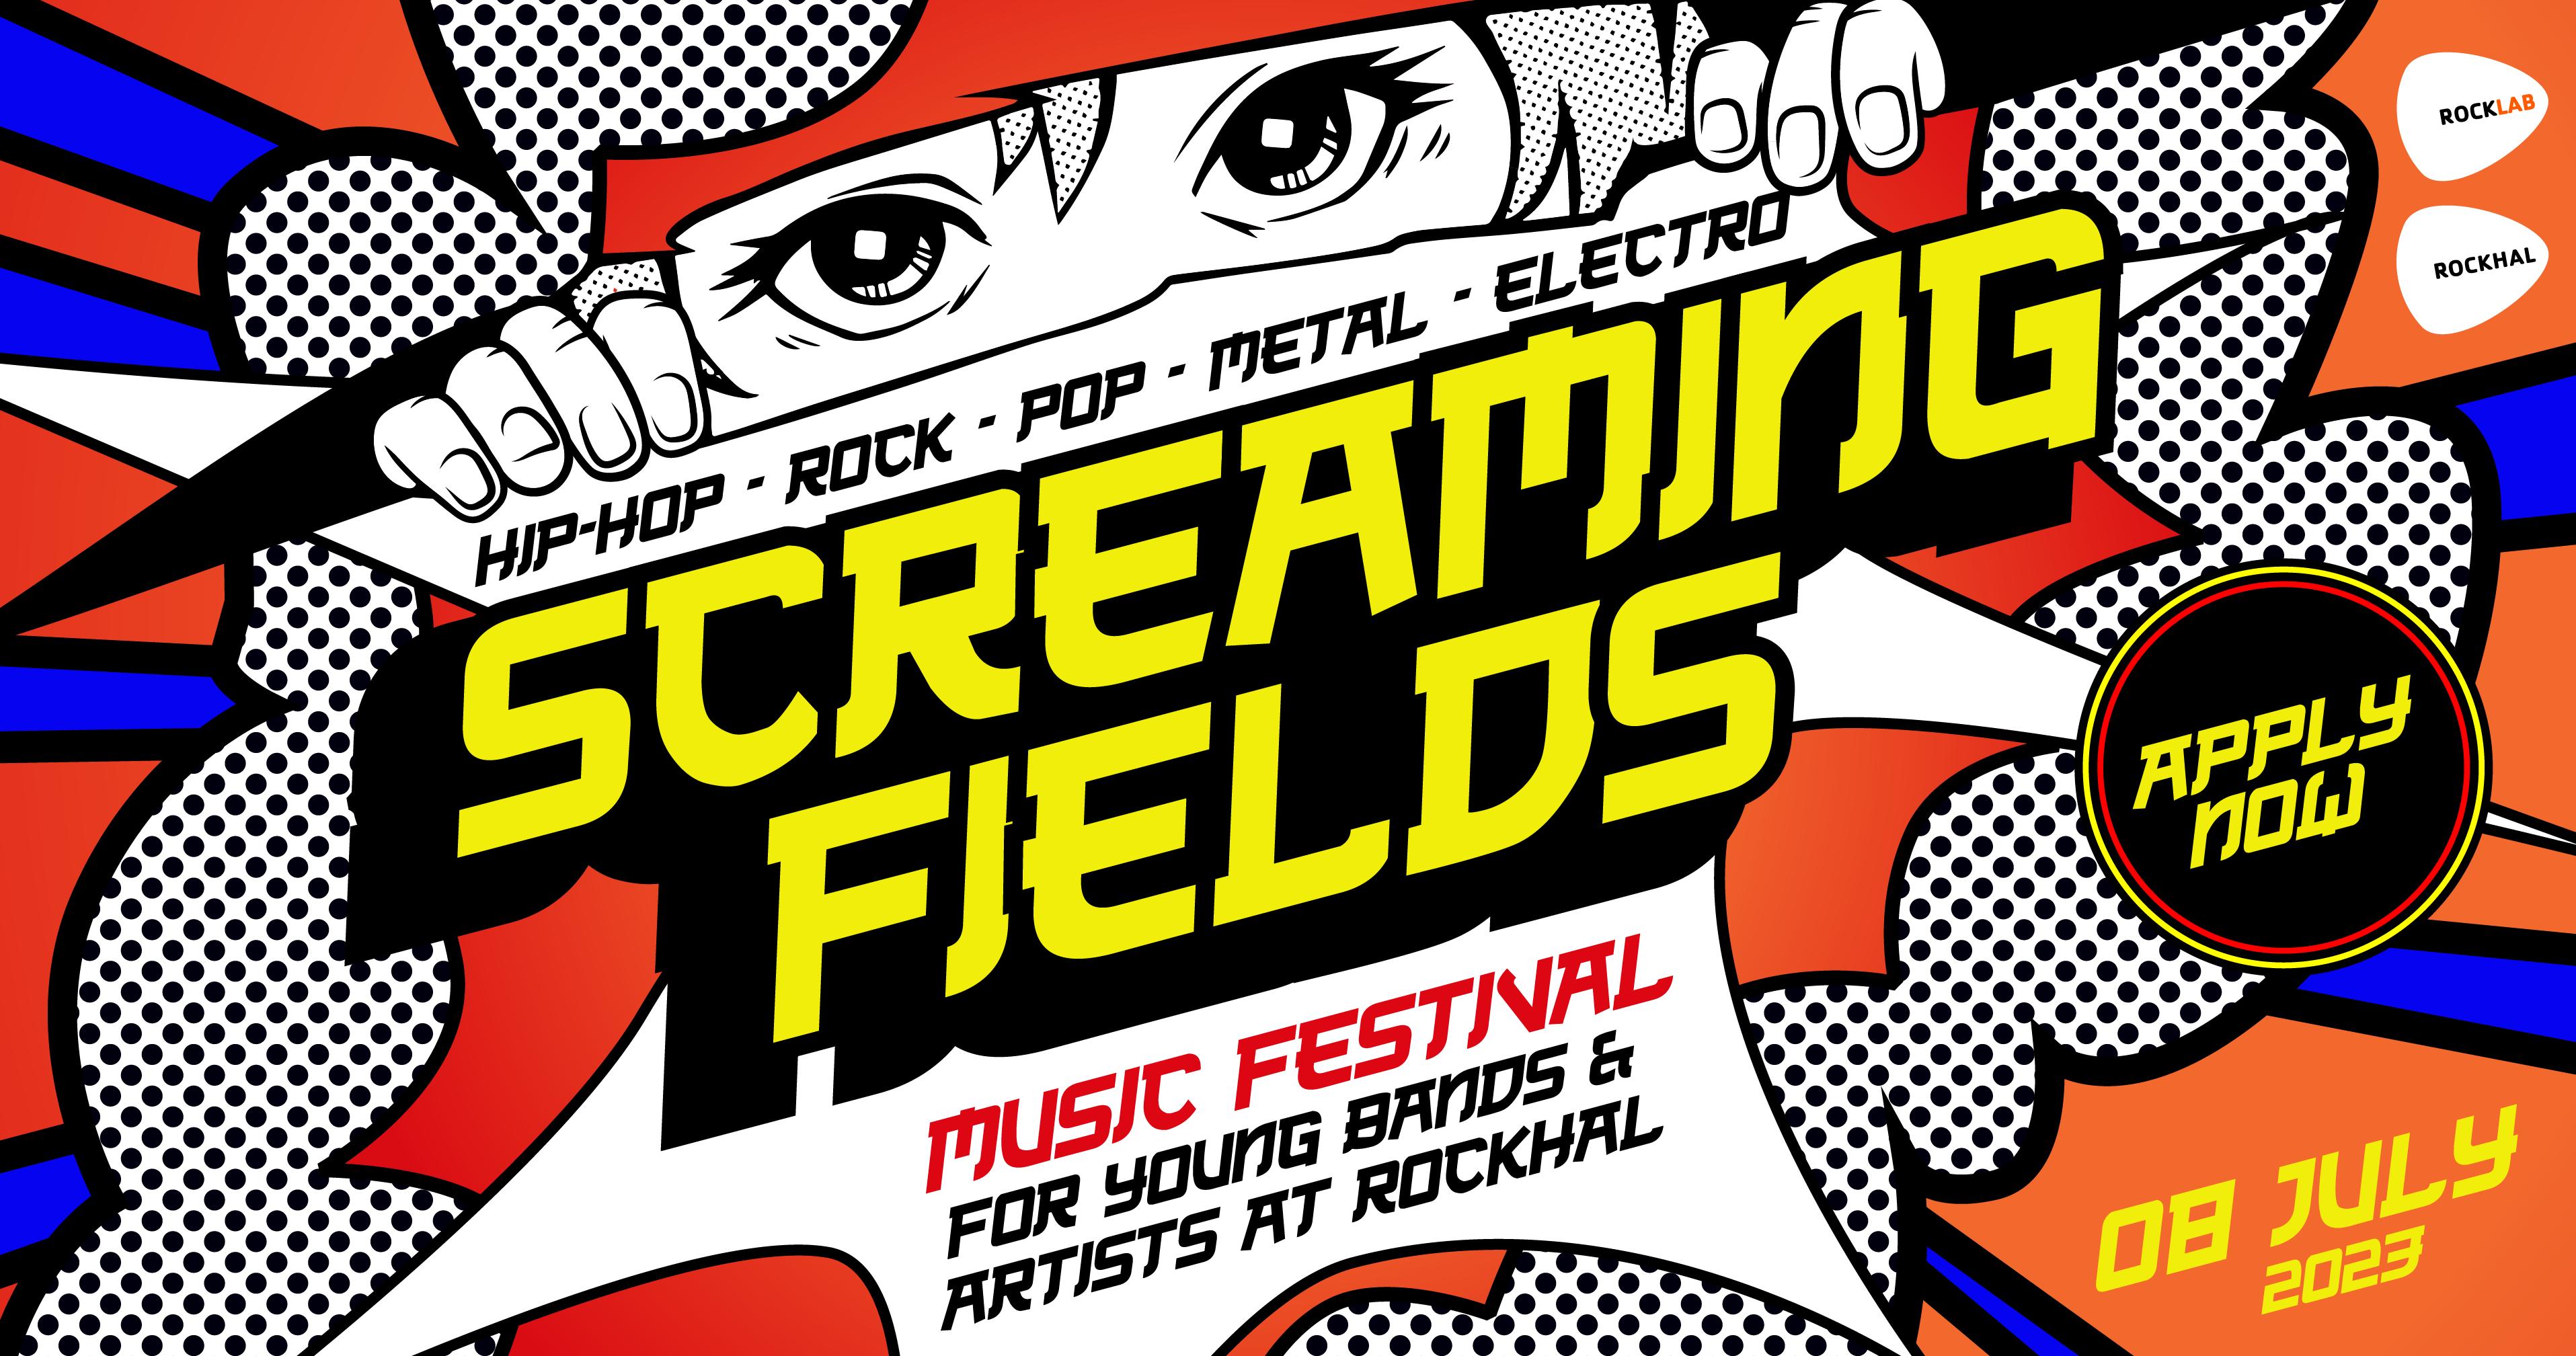 Screaming Fields festival